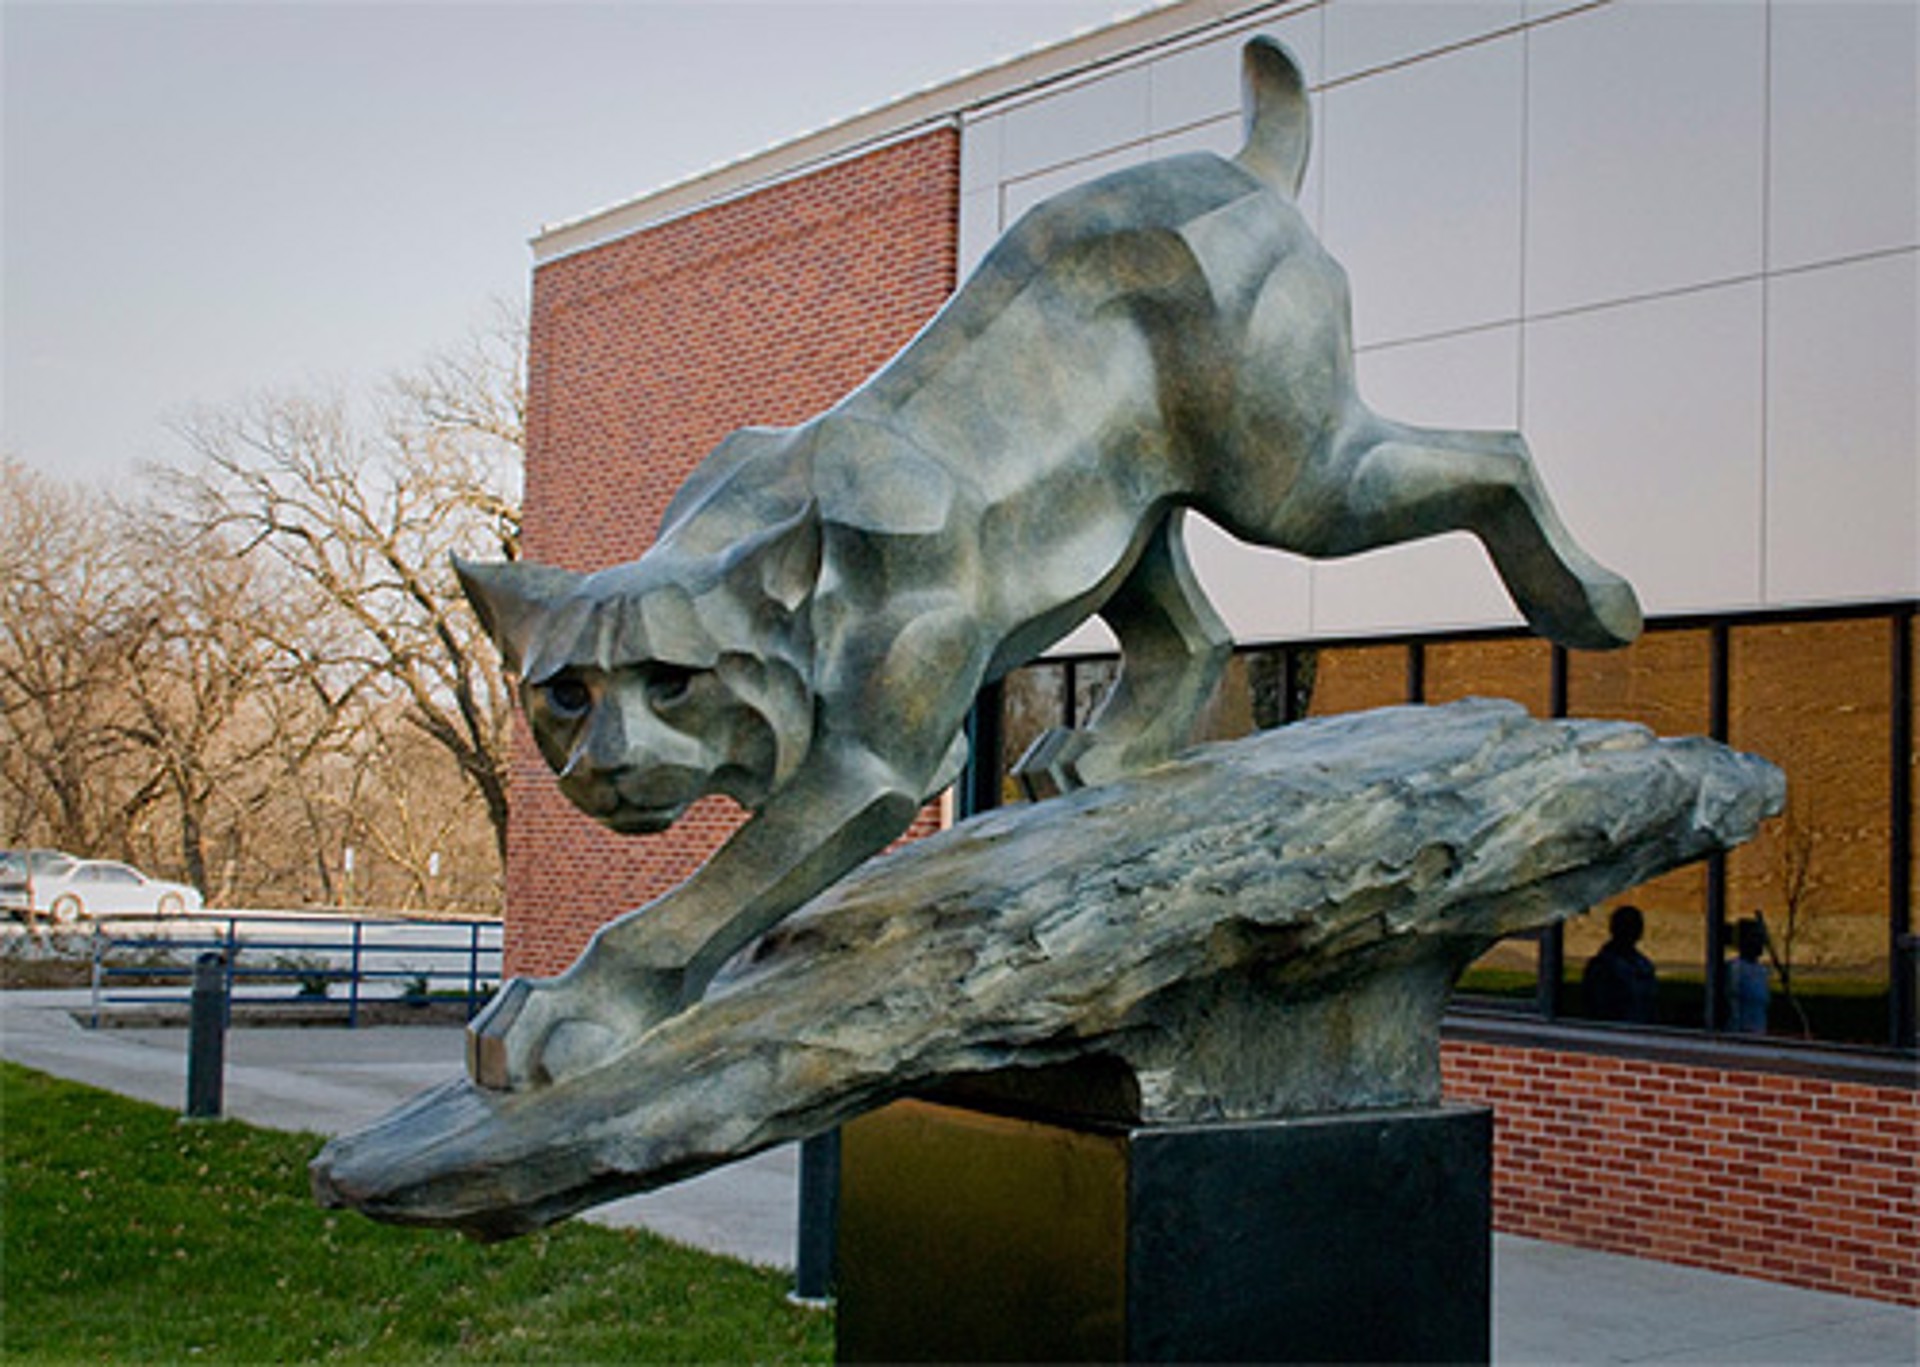 Rosetta Sculpture, Award-Winning Bronze Animal Sculptures